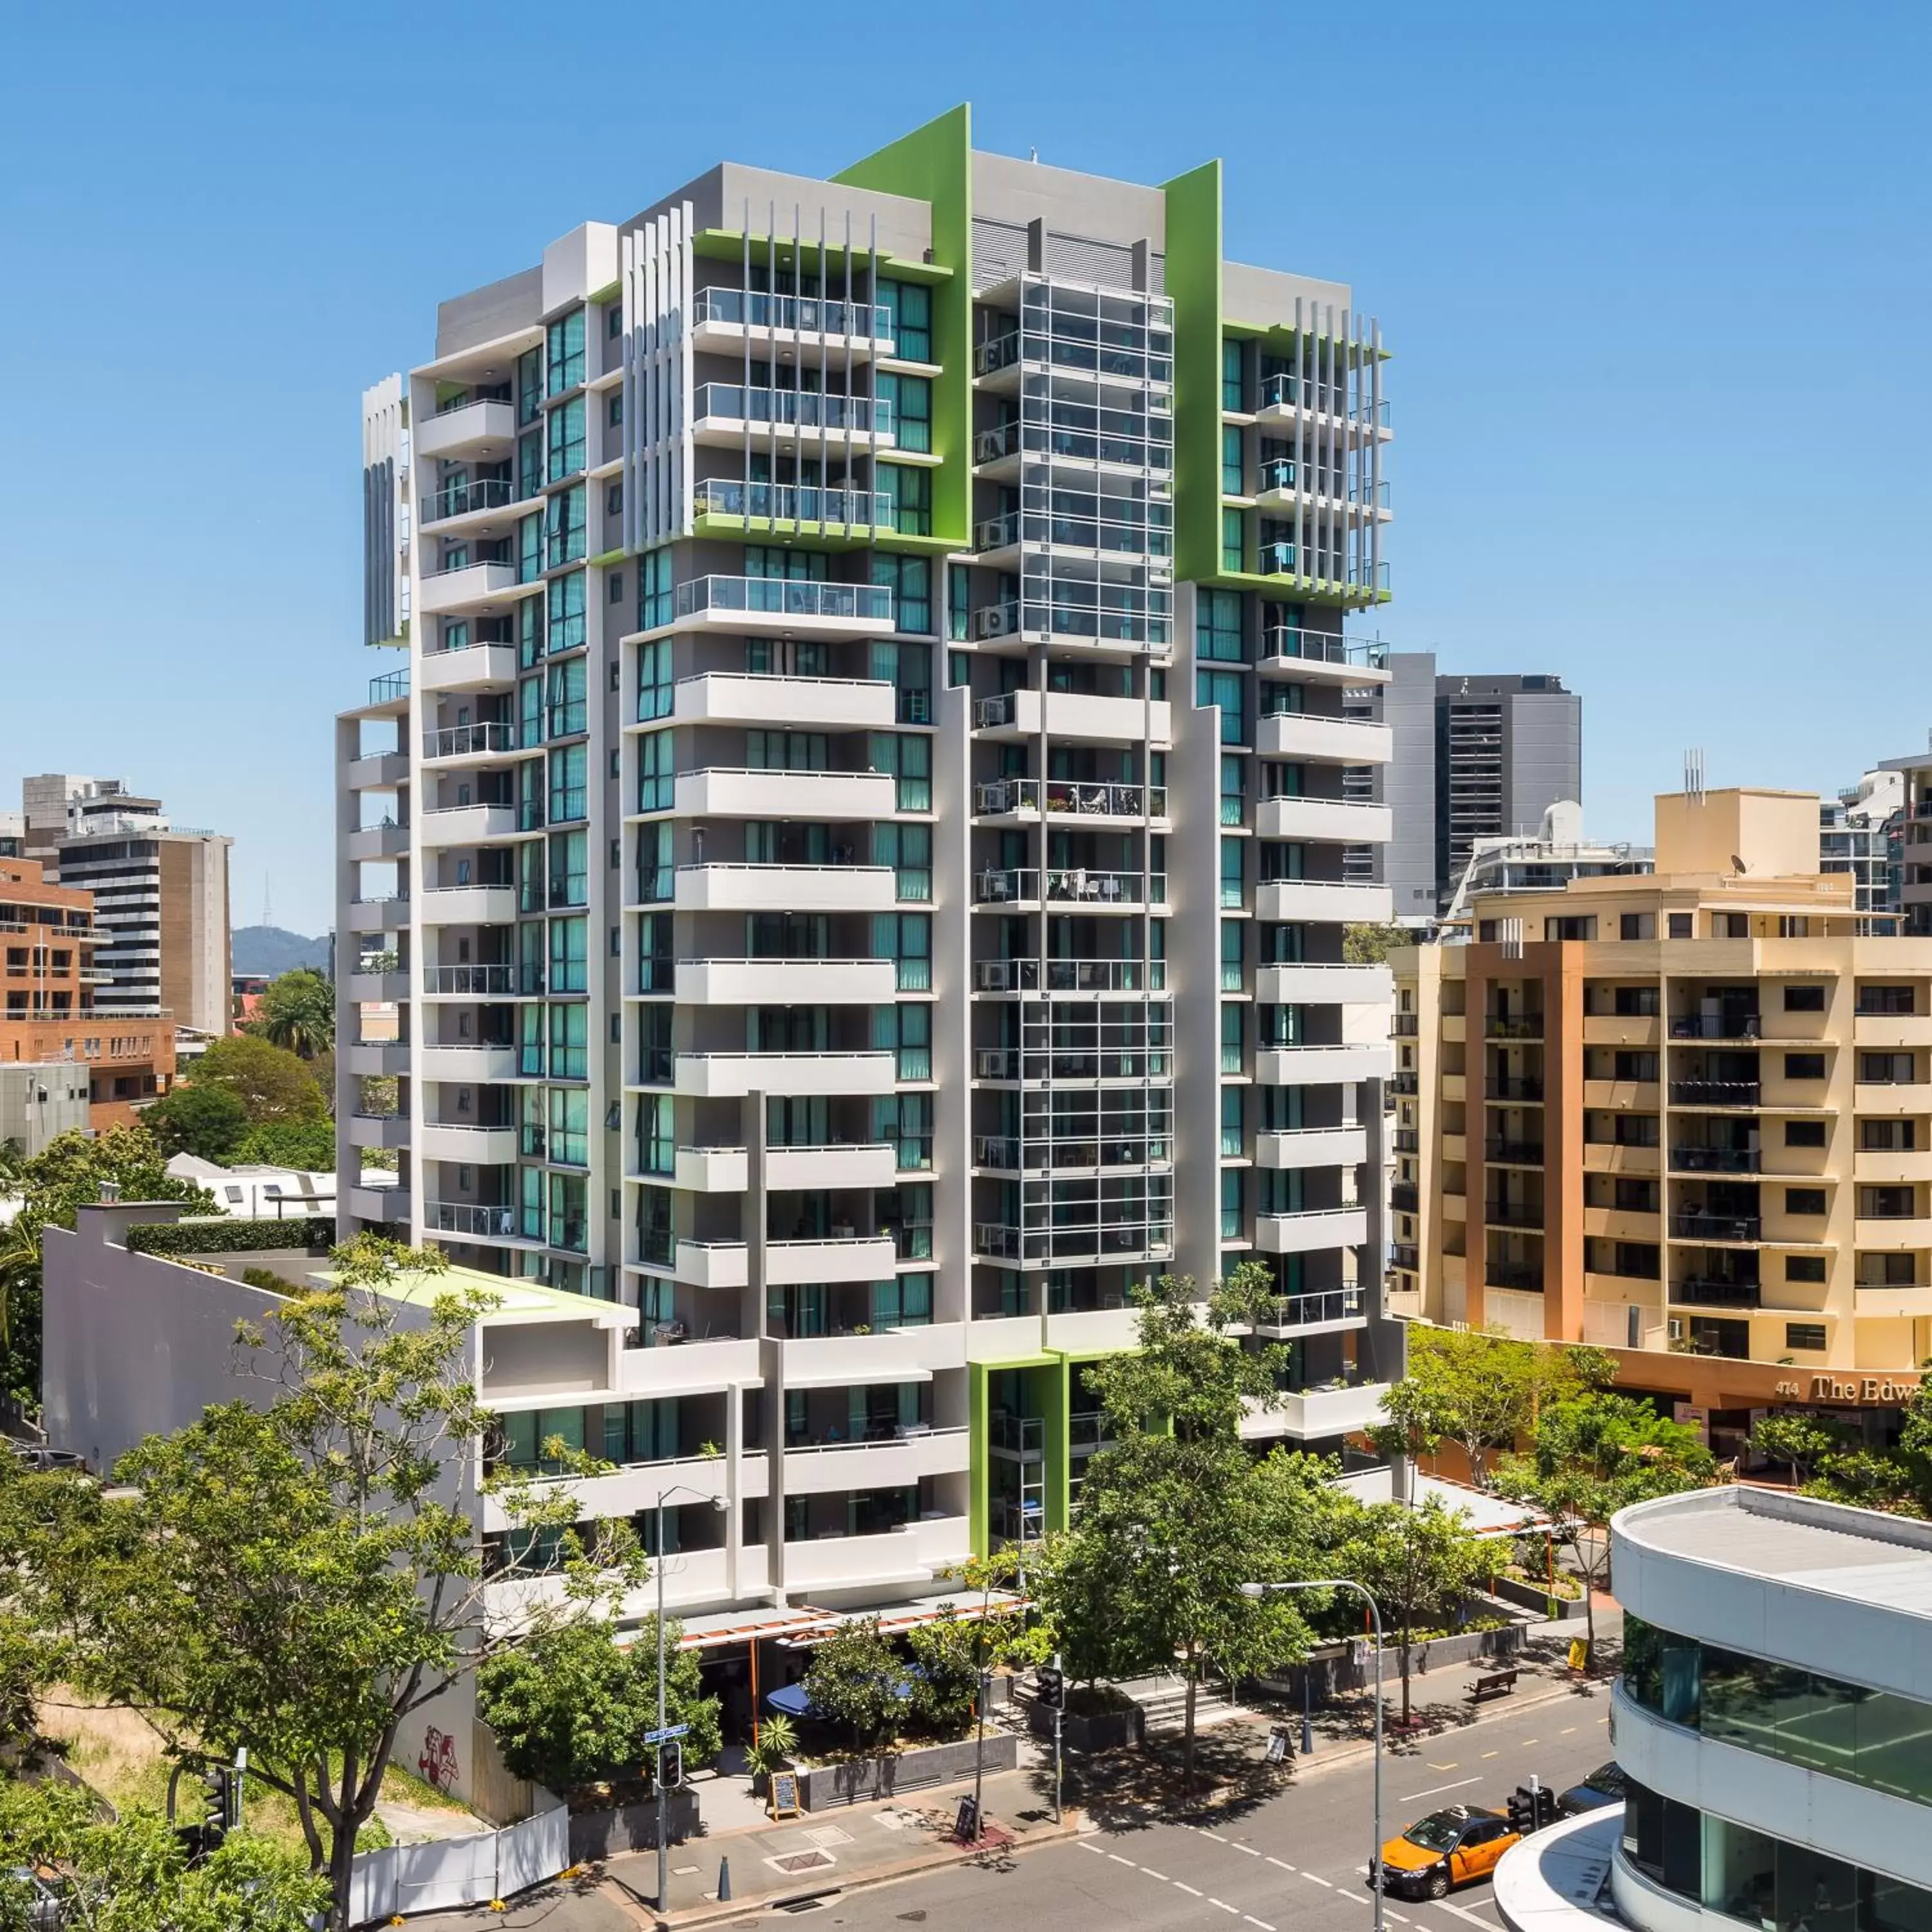 Property building in Flynn Brisbane